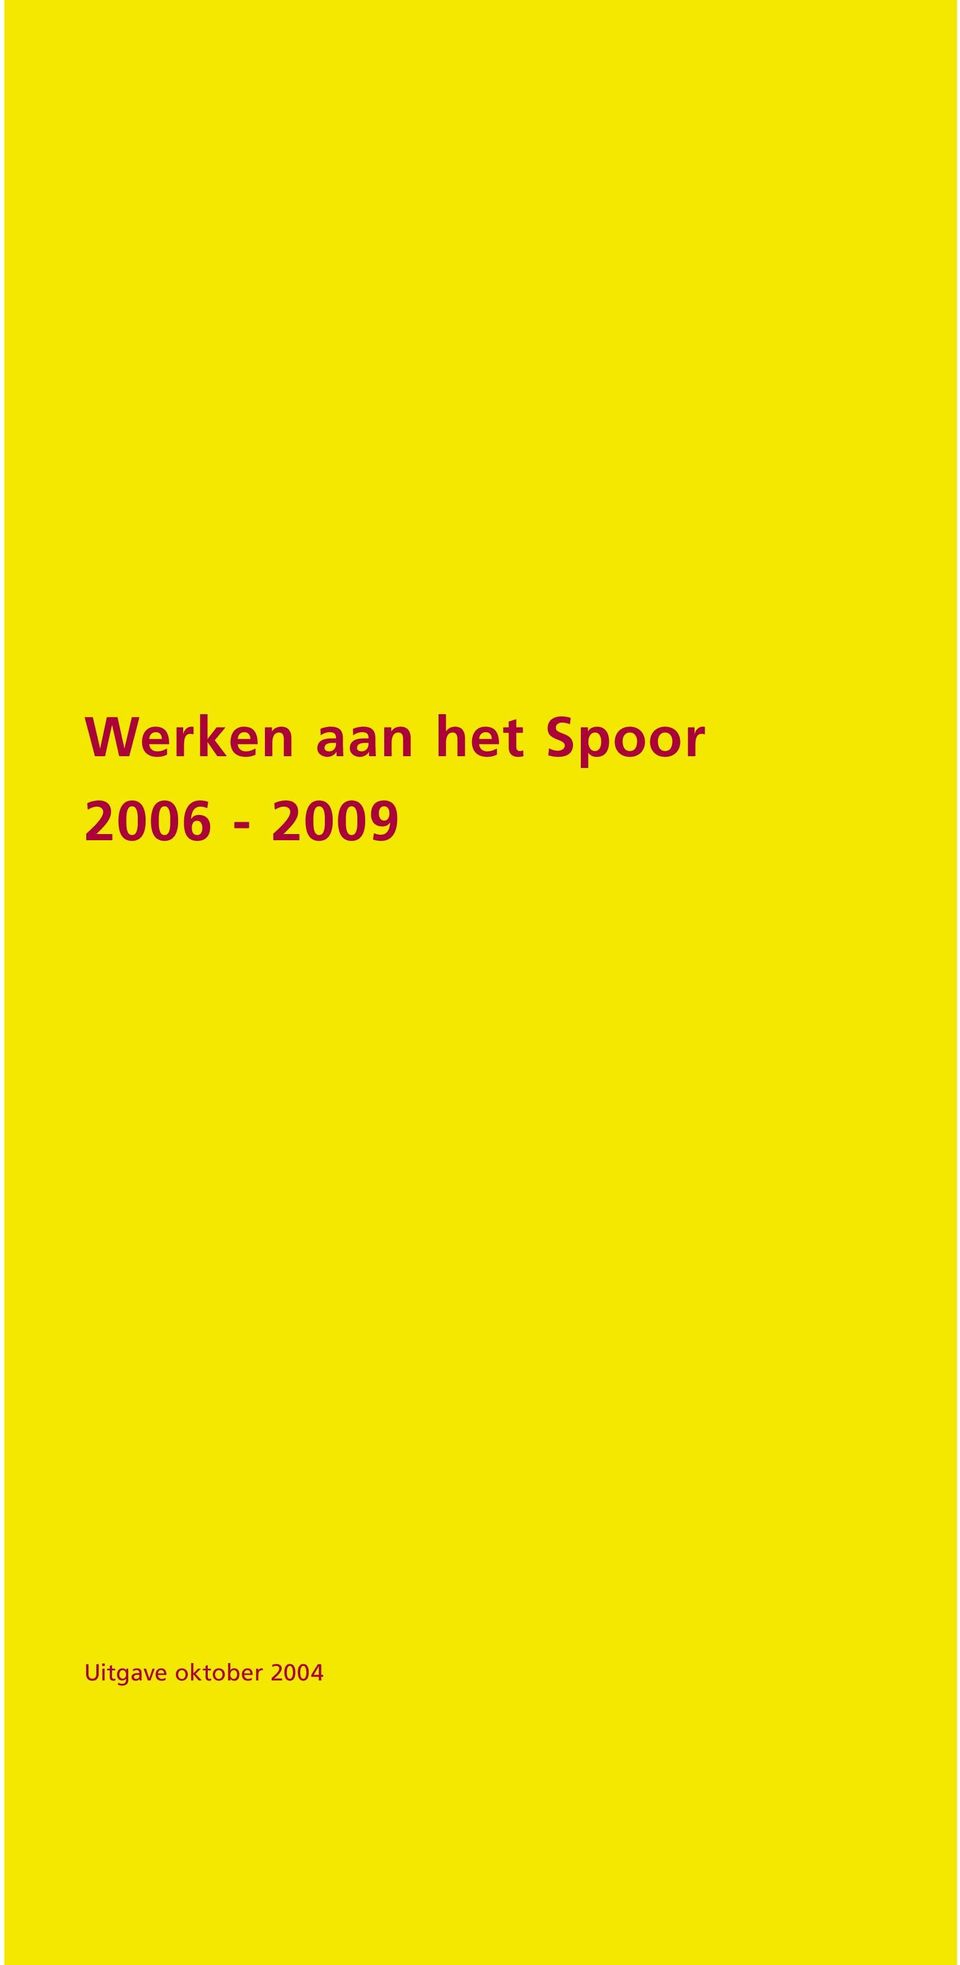 2006-2009